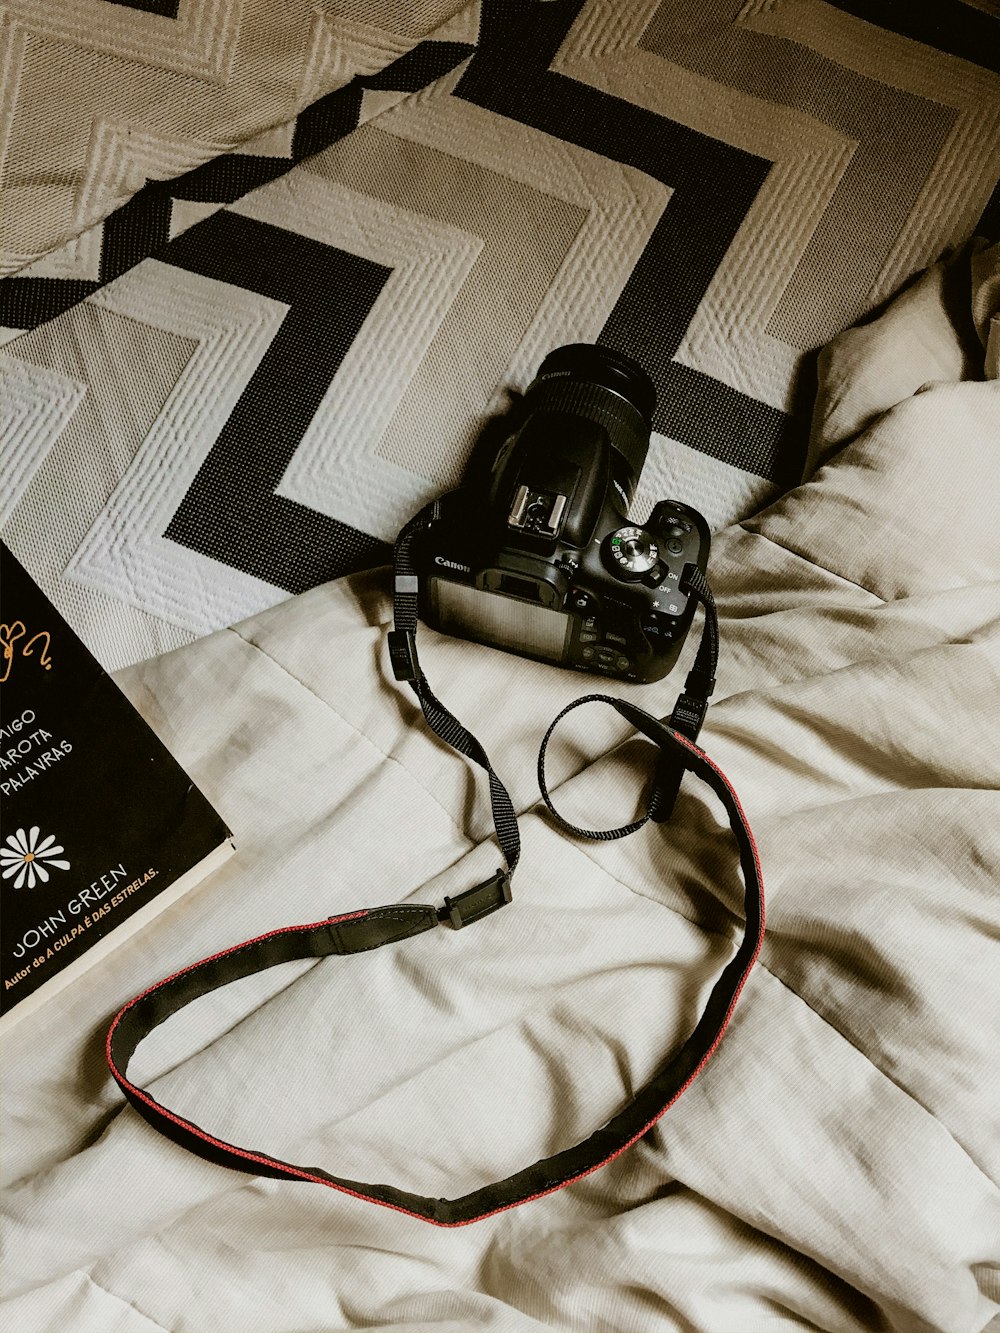 black DSLR camera on bed